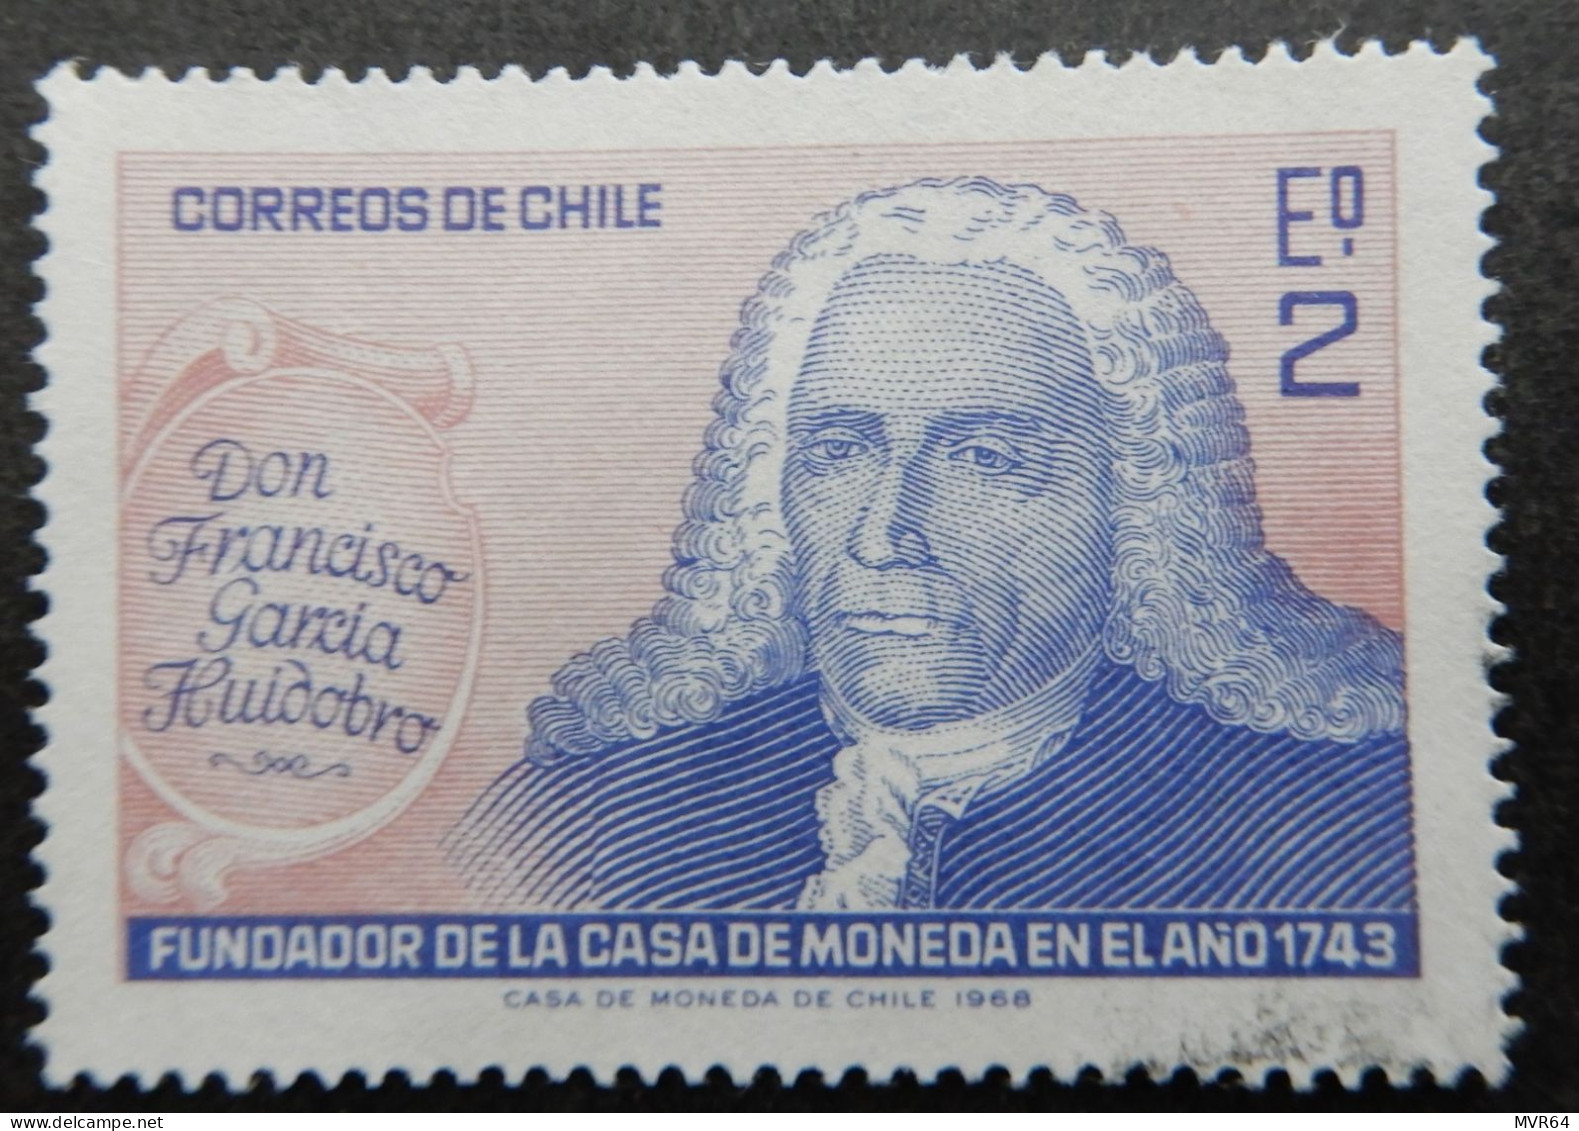 Chili Chile 1968 (1) Don Francisco Garcia Huidobra Anniv. Casa De Moneda. - Chili